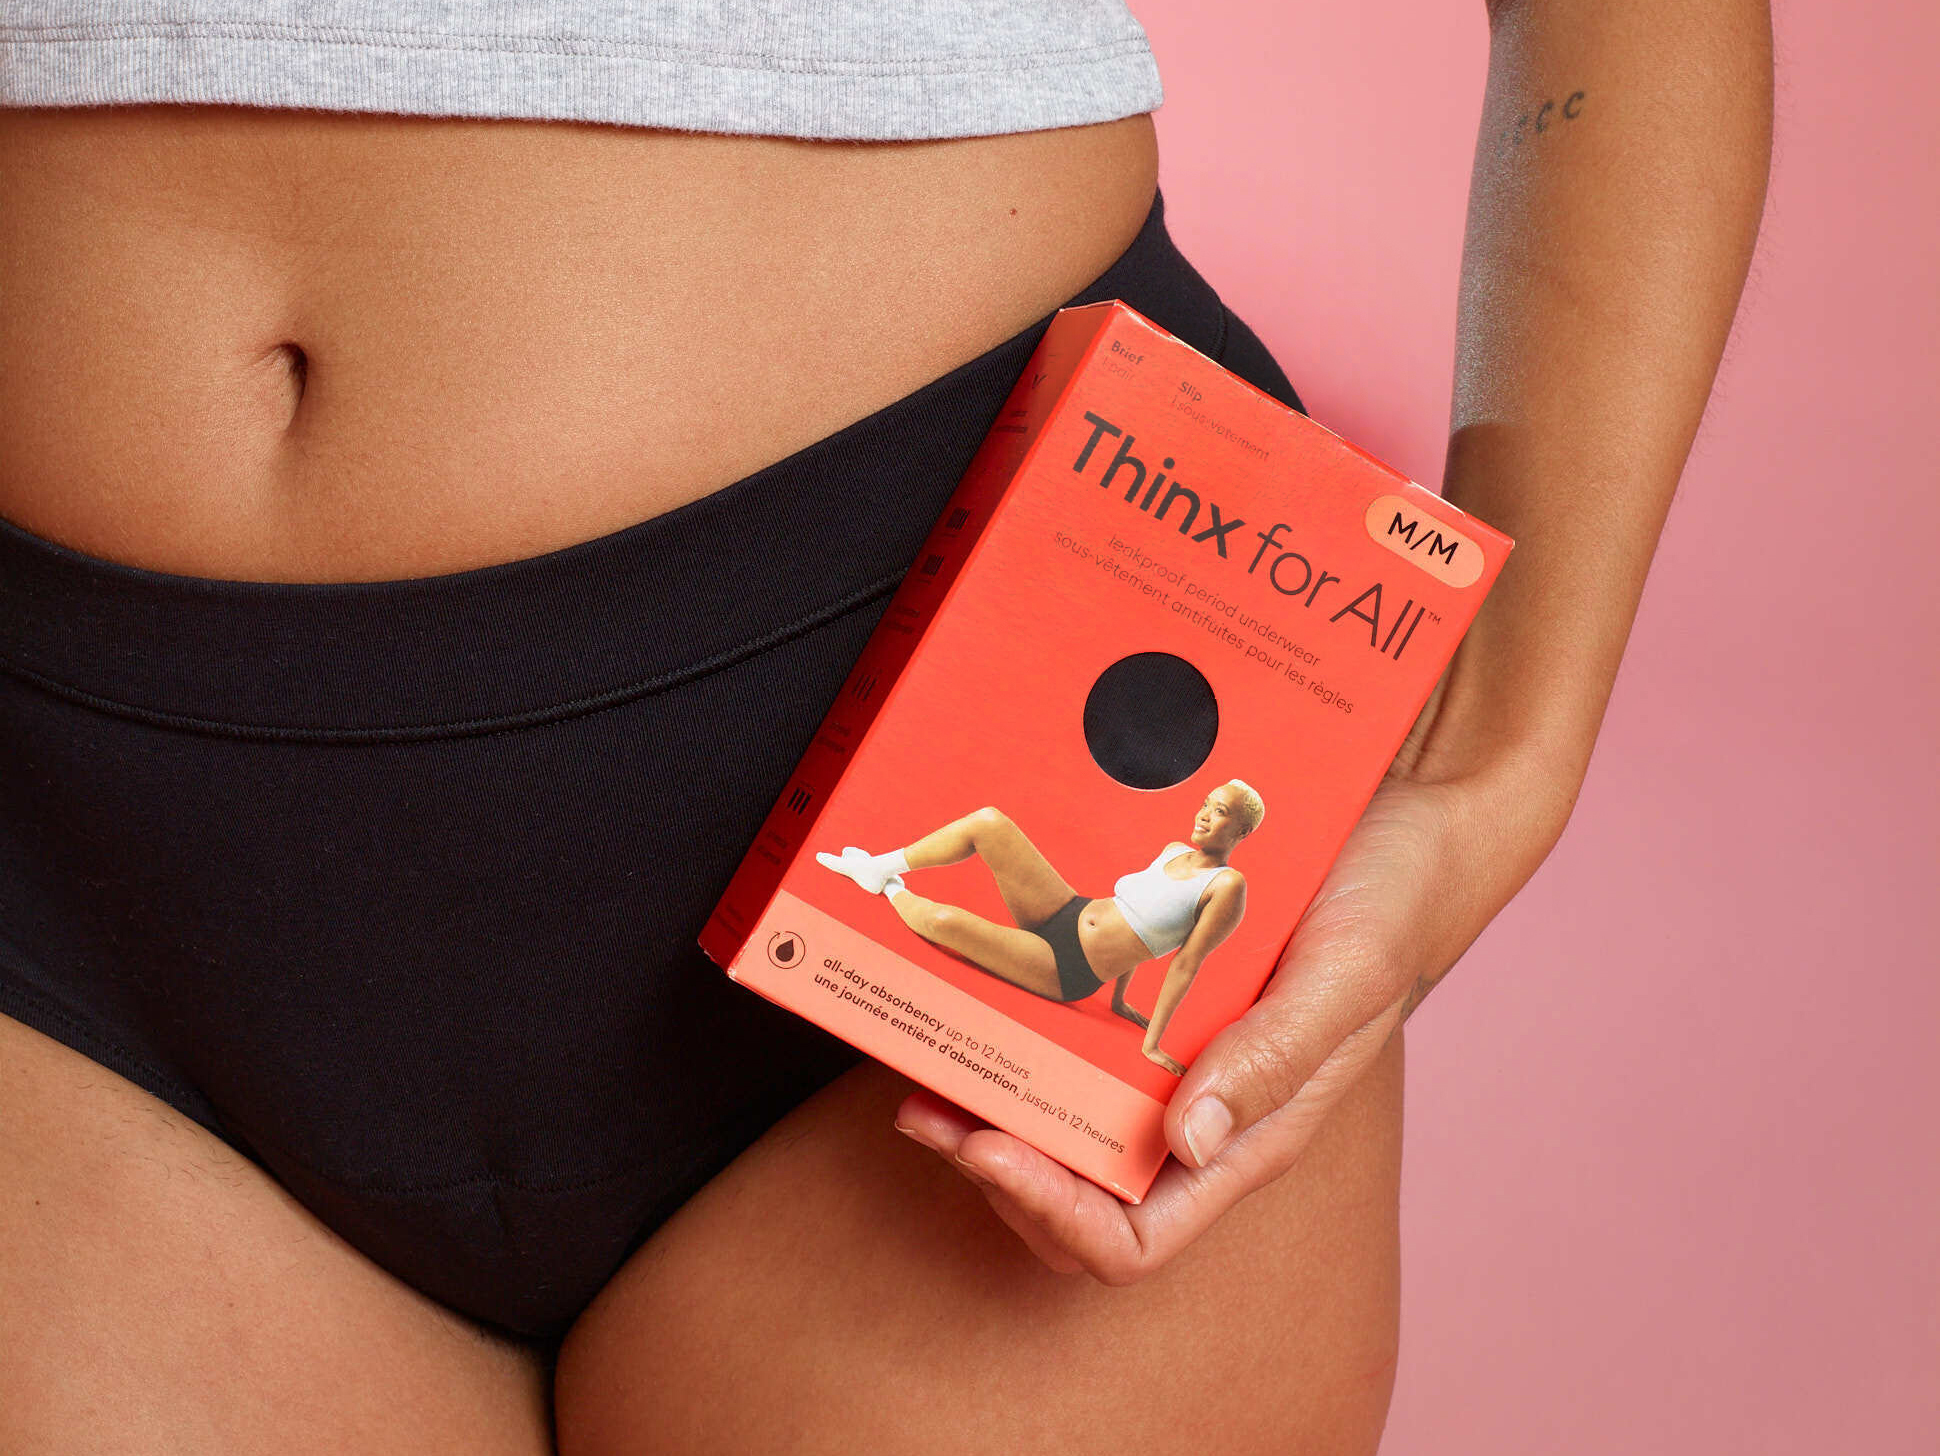 How to Wash Thinx Period Underwear